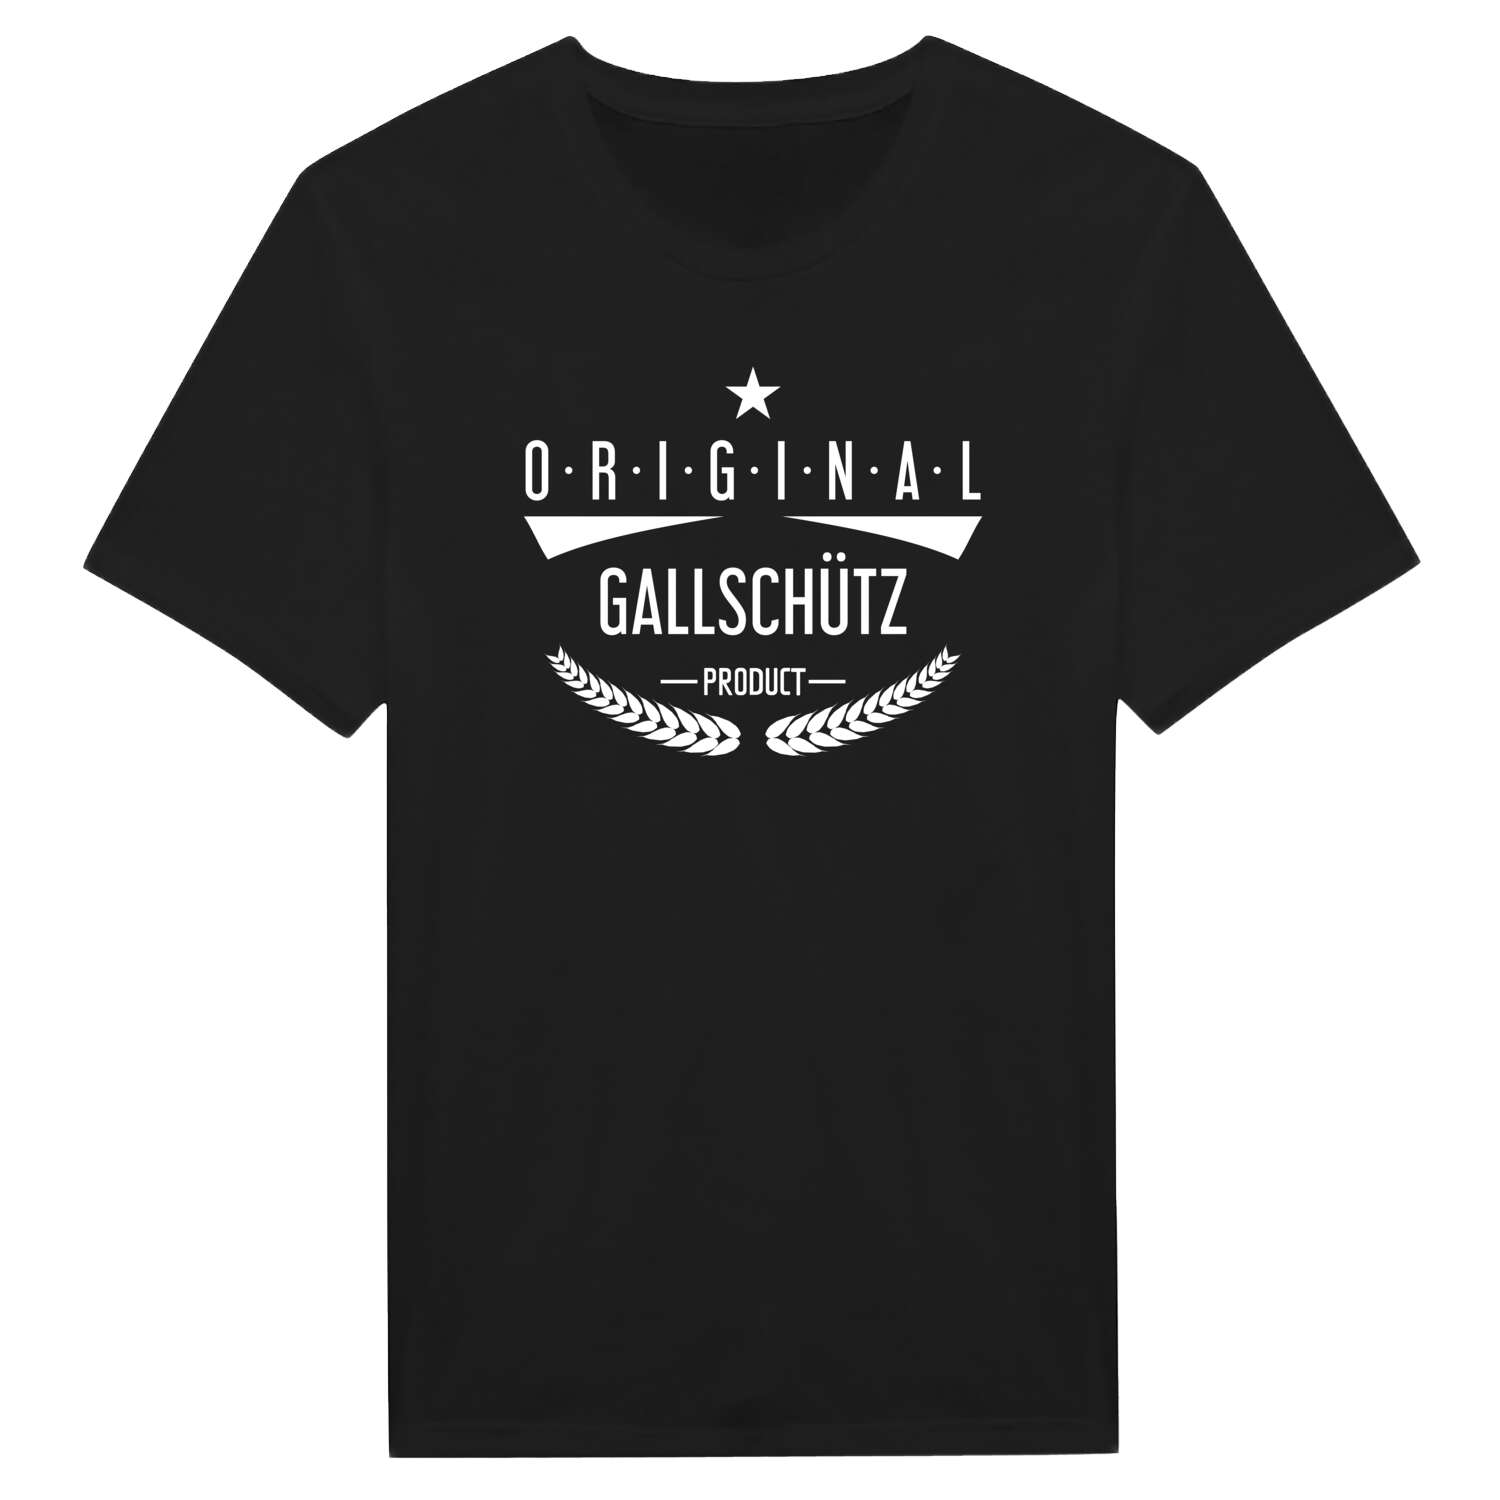 Gallschütz T-Shirt »Original Product«